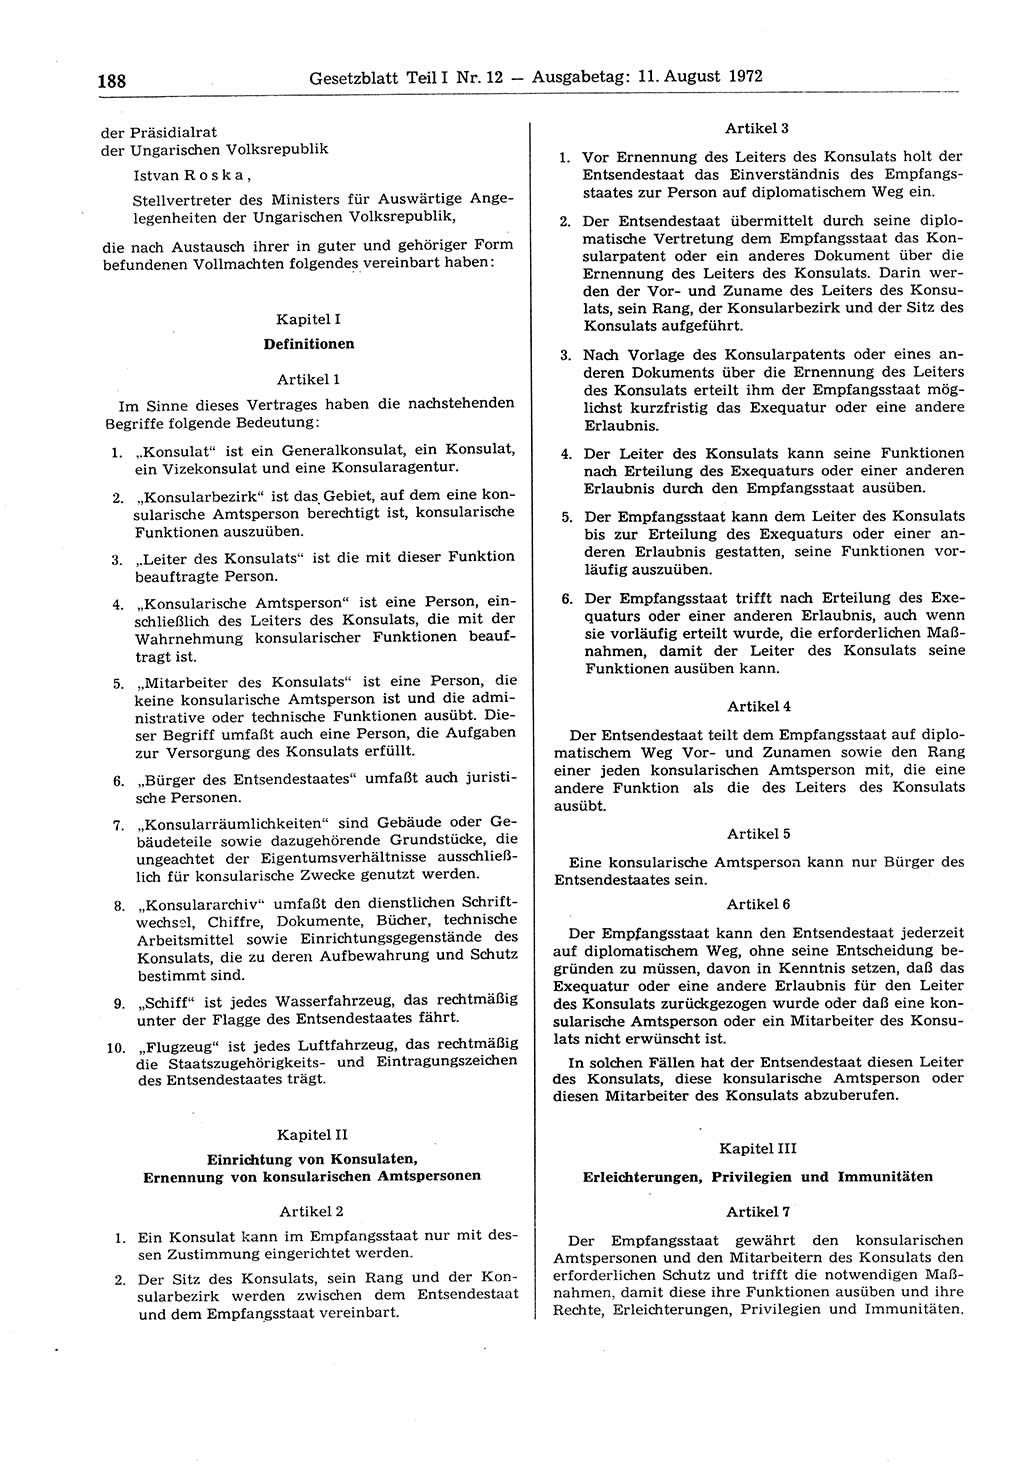 Gesetzblatt (GBl.) der Deutschen Demokratischen Republik (DDR) Teil Ⅰ 1972, Seite 188 (GBl. DDR Ⅰ 1972, S. 188)